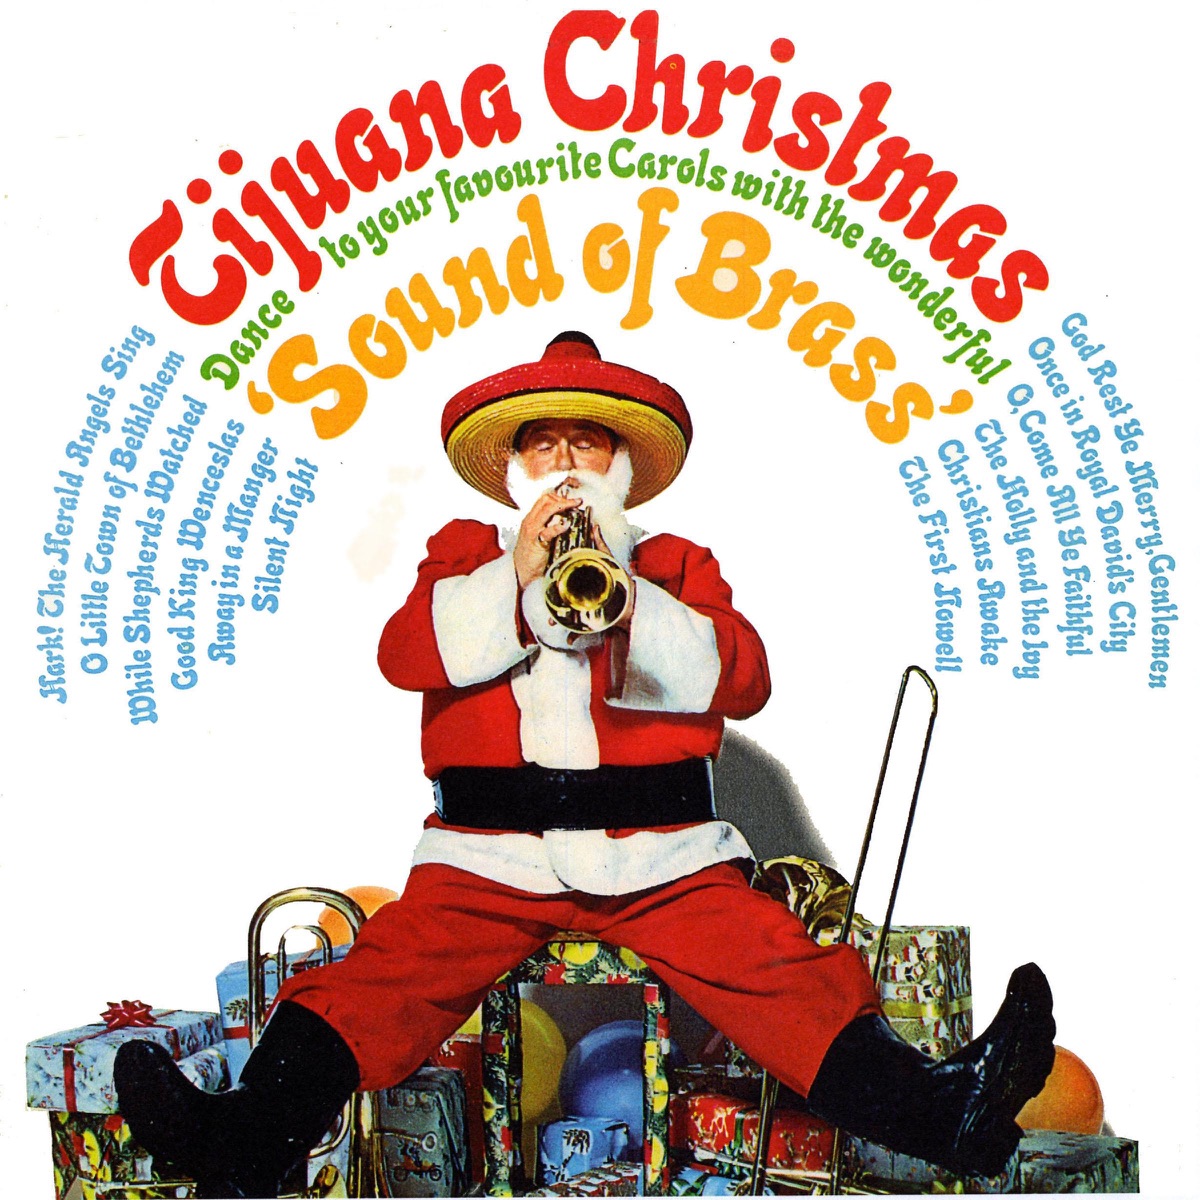 The Torero Band - Tijuana Christmas (Sound of Brass)